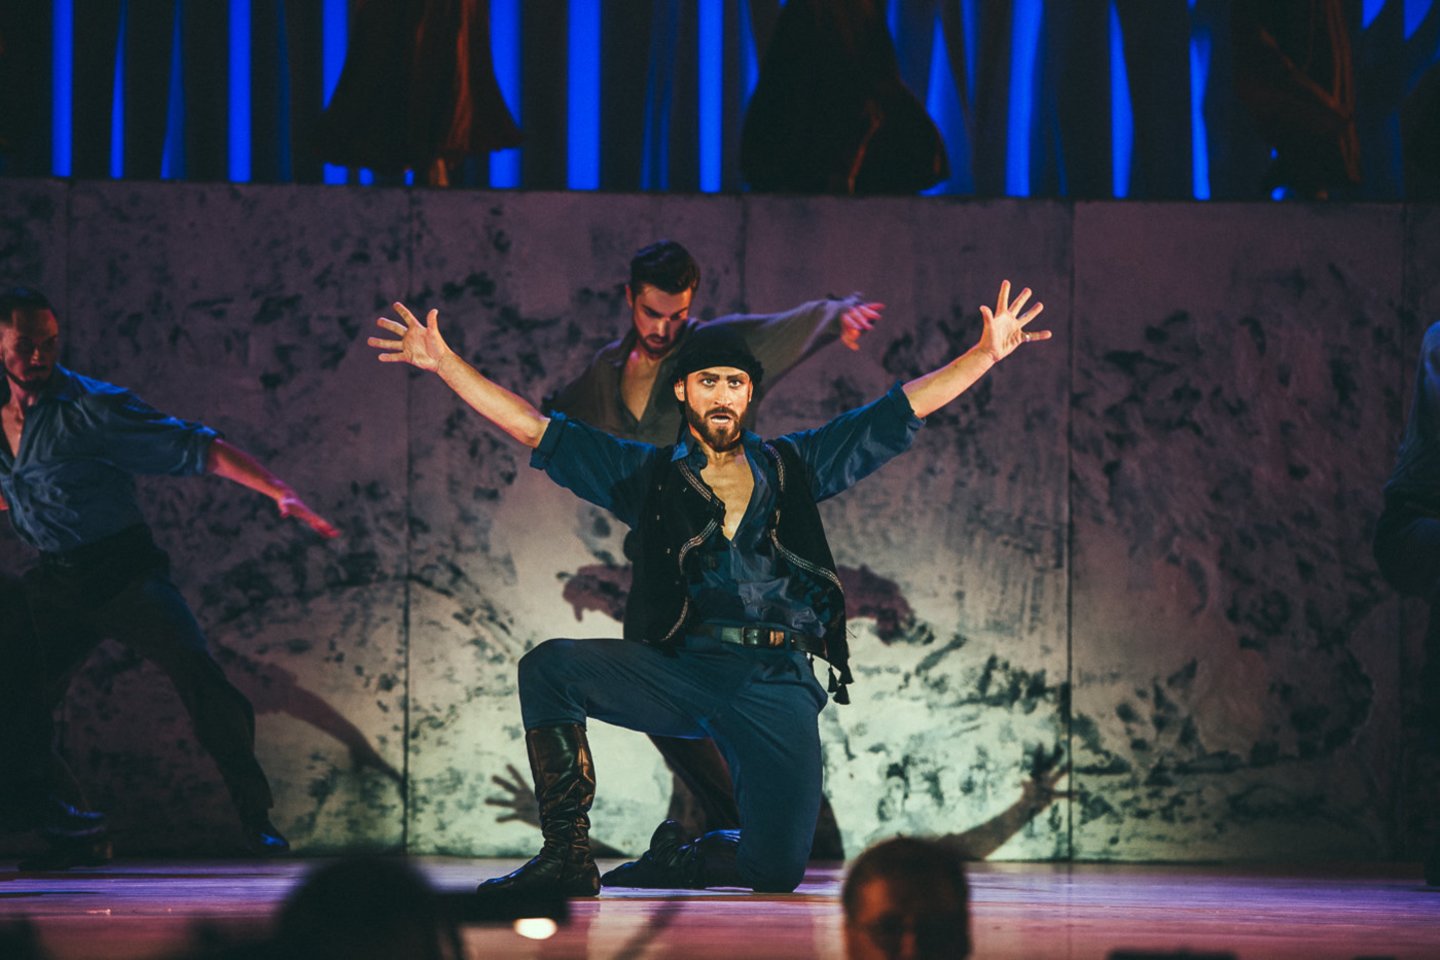  Klaipėdos valstybinis muzikinis teatras žiūrovams pristatė premjerą -  temperamentingą šokių spektaklį "Graikas Zorba".<br> E.Sabaliauskaitės nuotr.